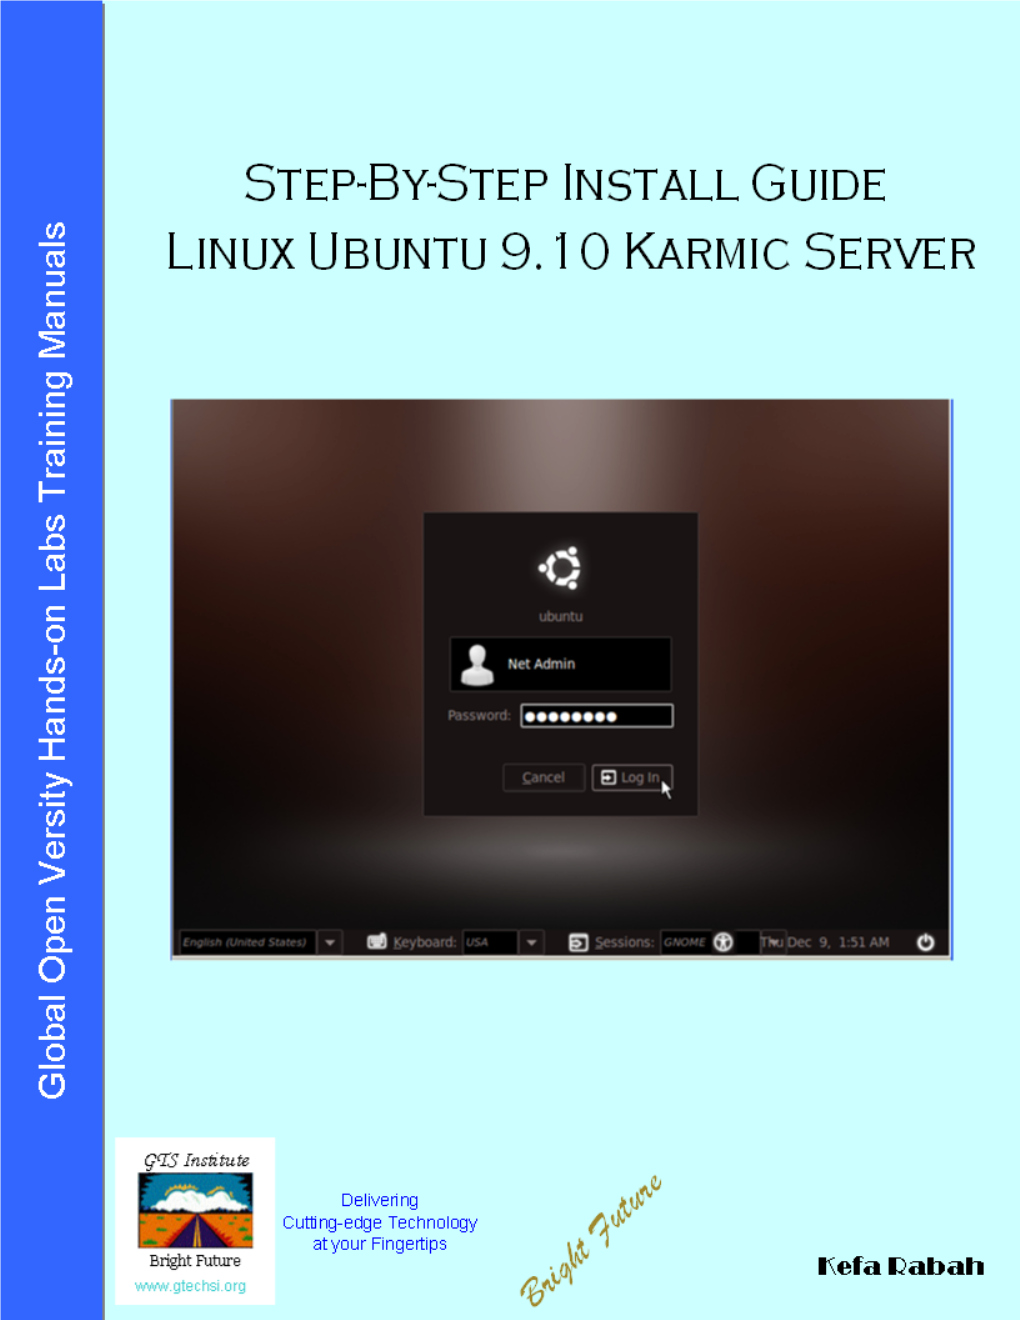 Step-By-Step Install Guide Ubuntu 9.10 Server V1.0